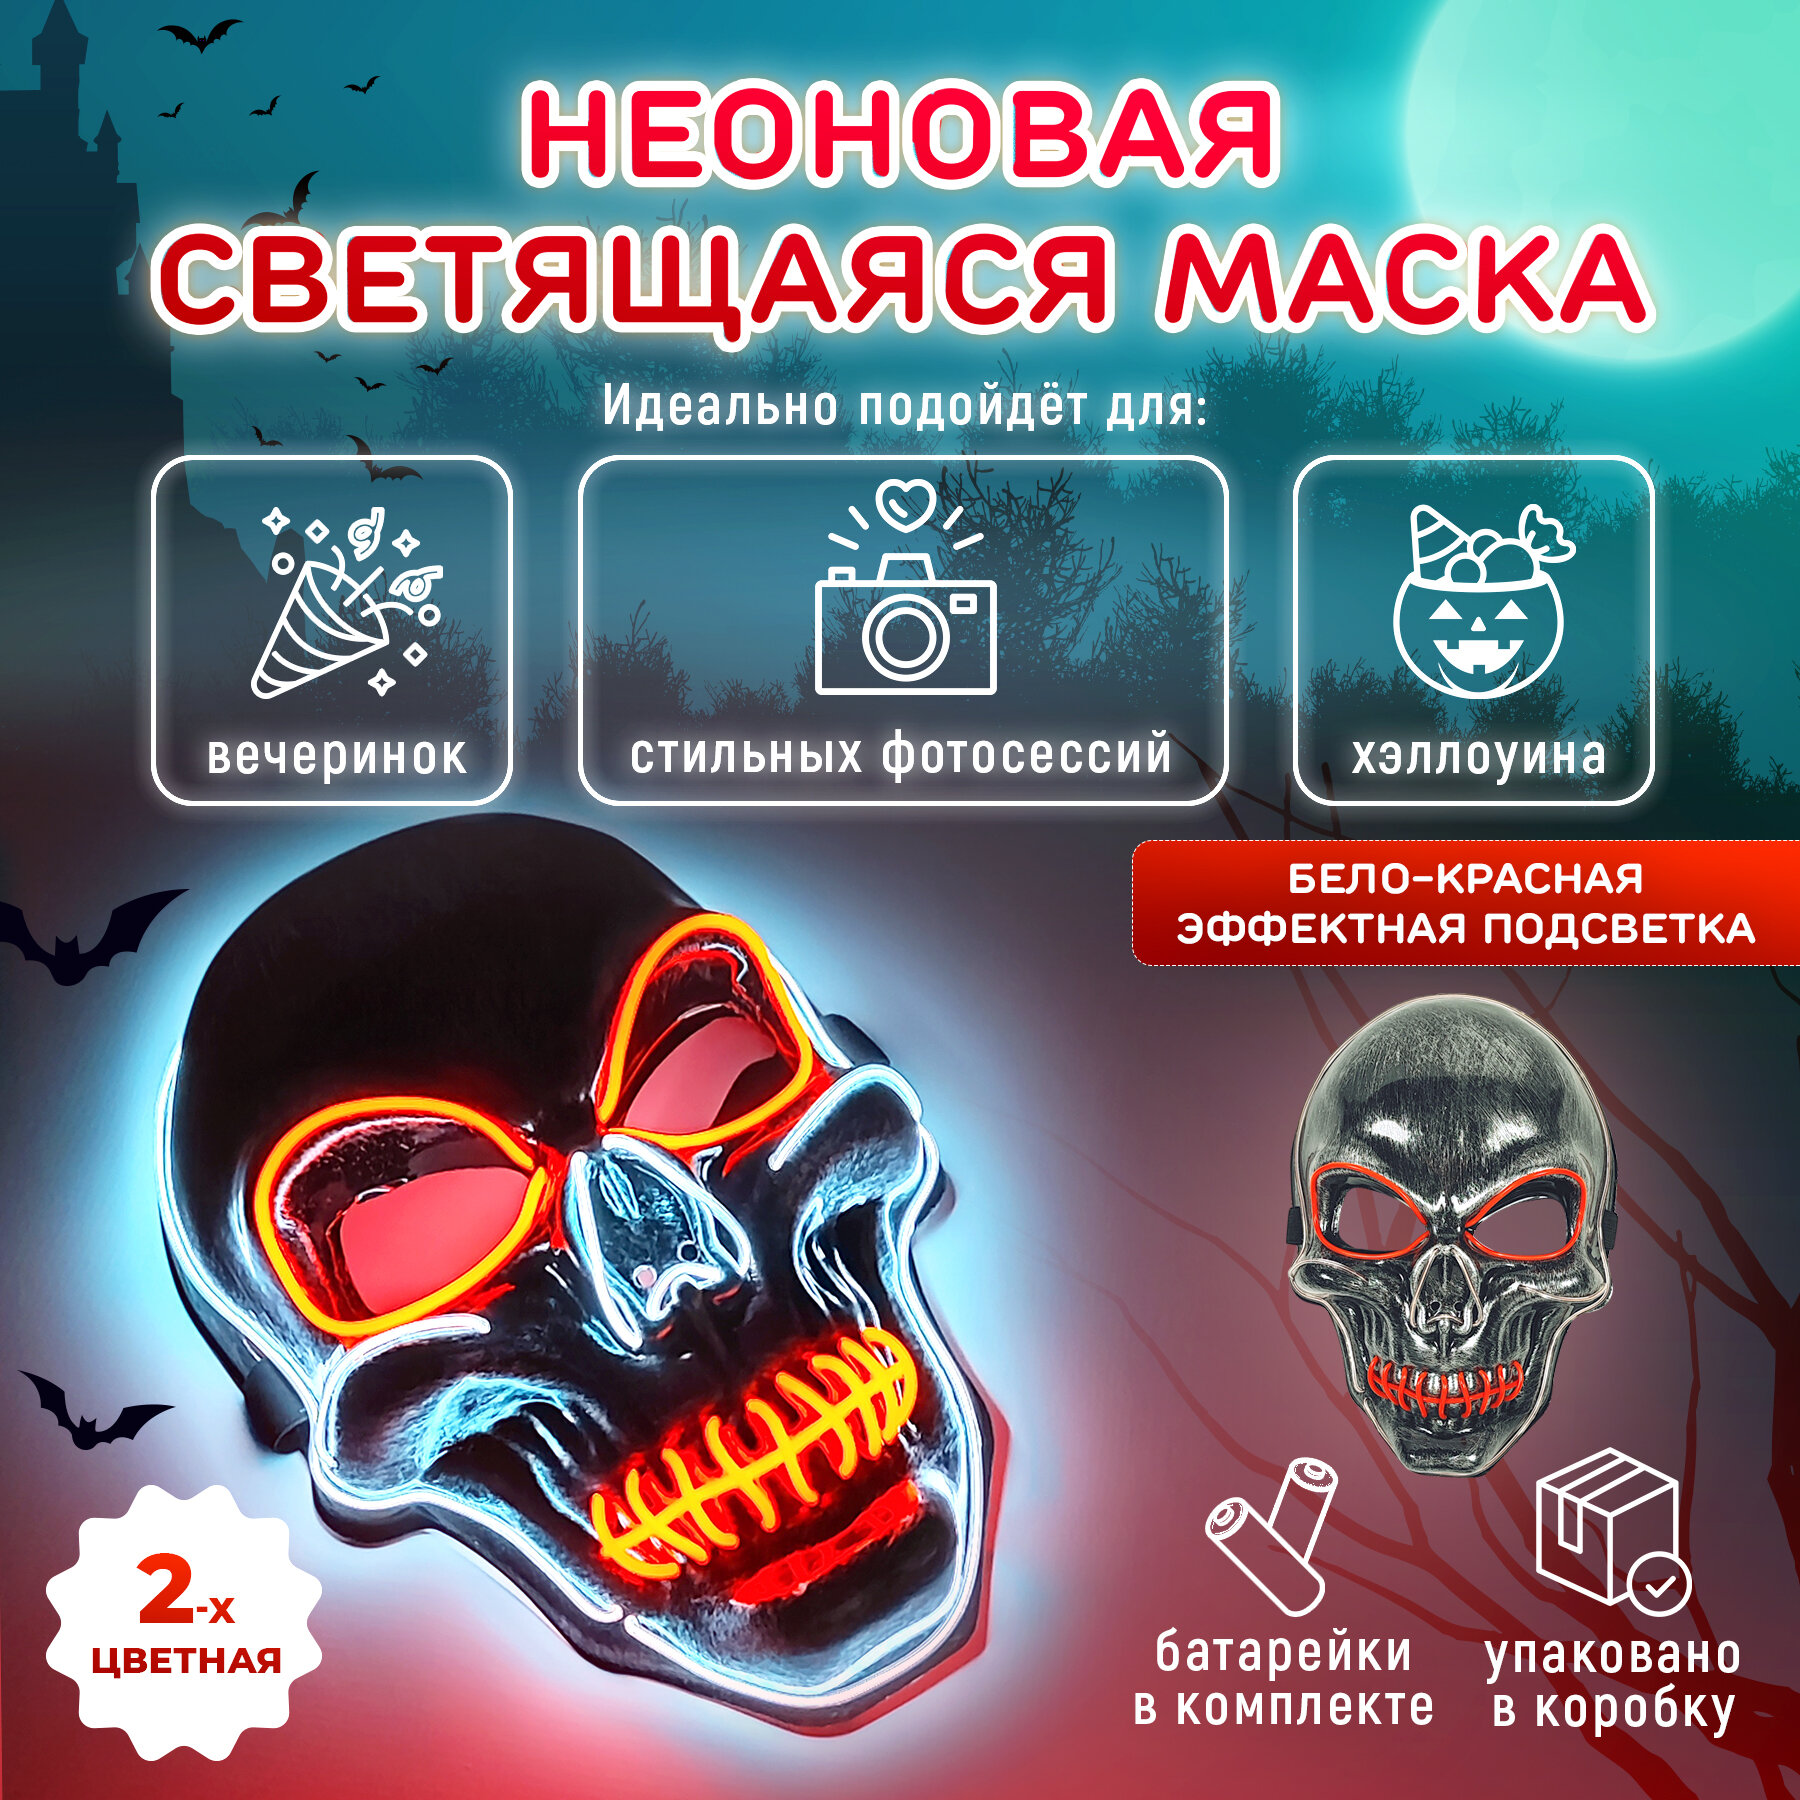 Неоновая маска скелета светящаяся. Карнавальный образ "Череп" для Хэллоуина. 3 режима работы. Двухцветная, бело-красное свечение